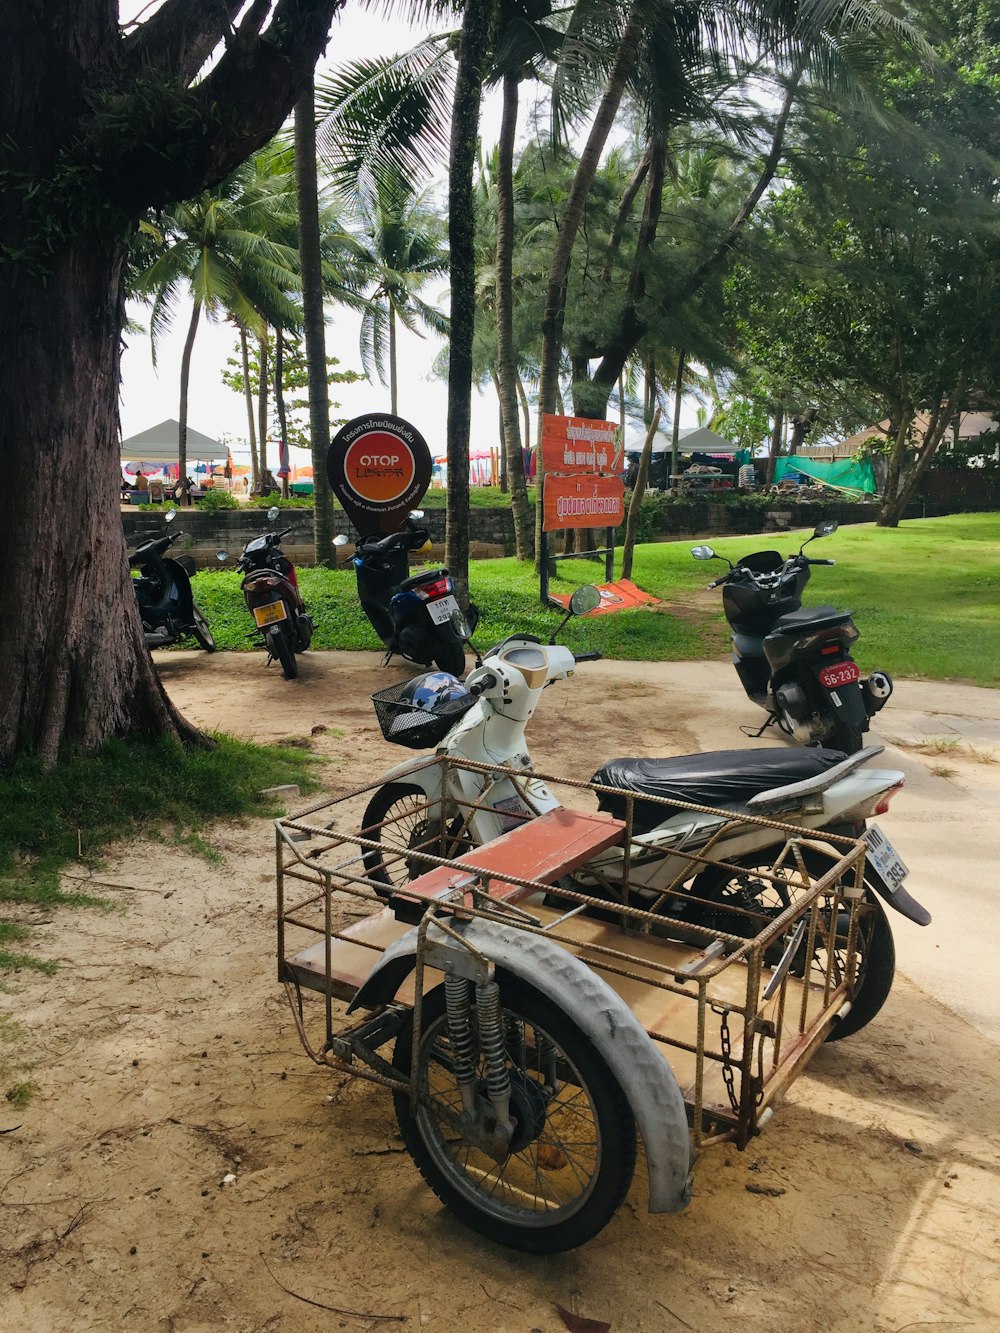 motos garées sur le bord d’une route